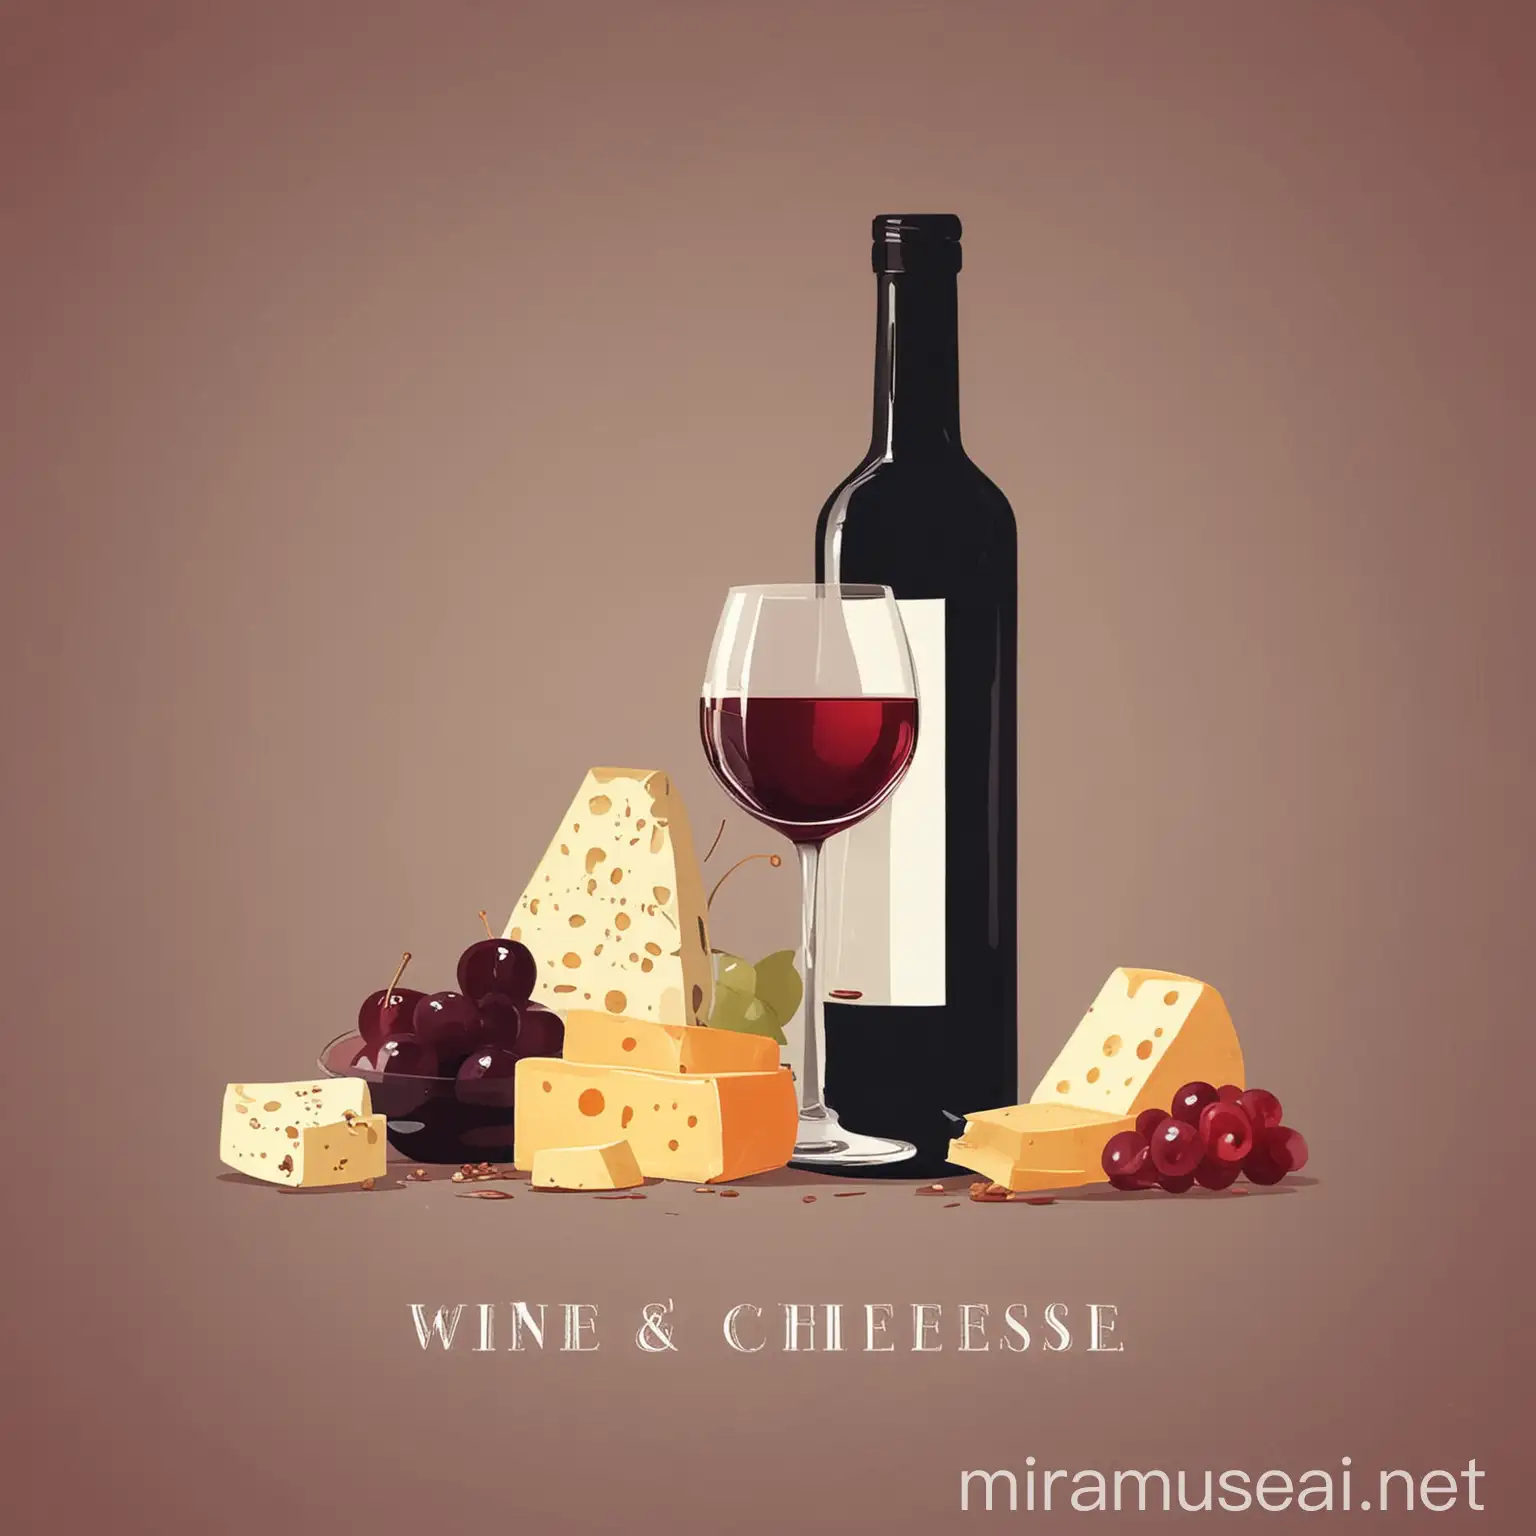 вино и сыр дегустация, векторная иллюстрация, минимализм